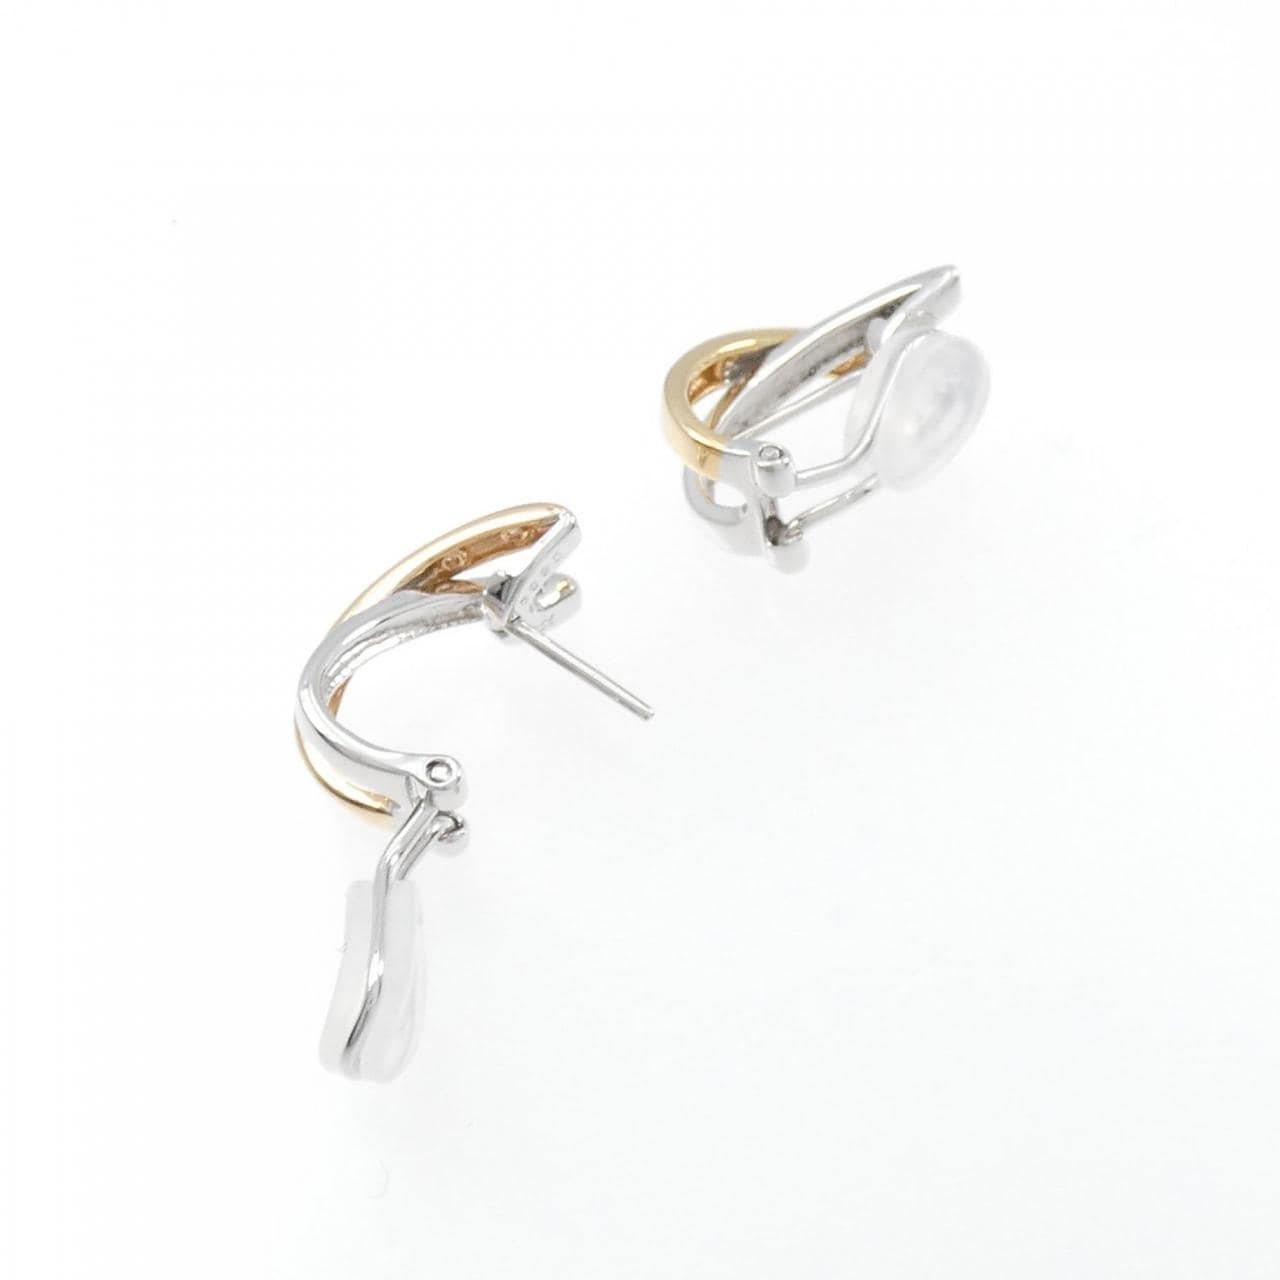 750WG/750PG Diamond Earrings/Earrings 0.10CT